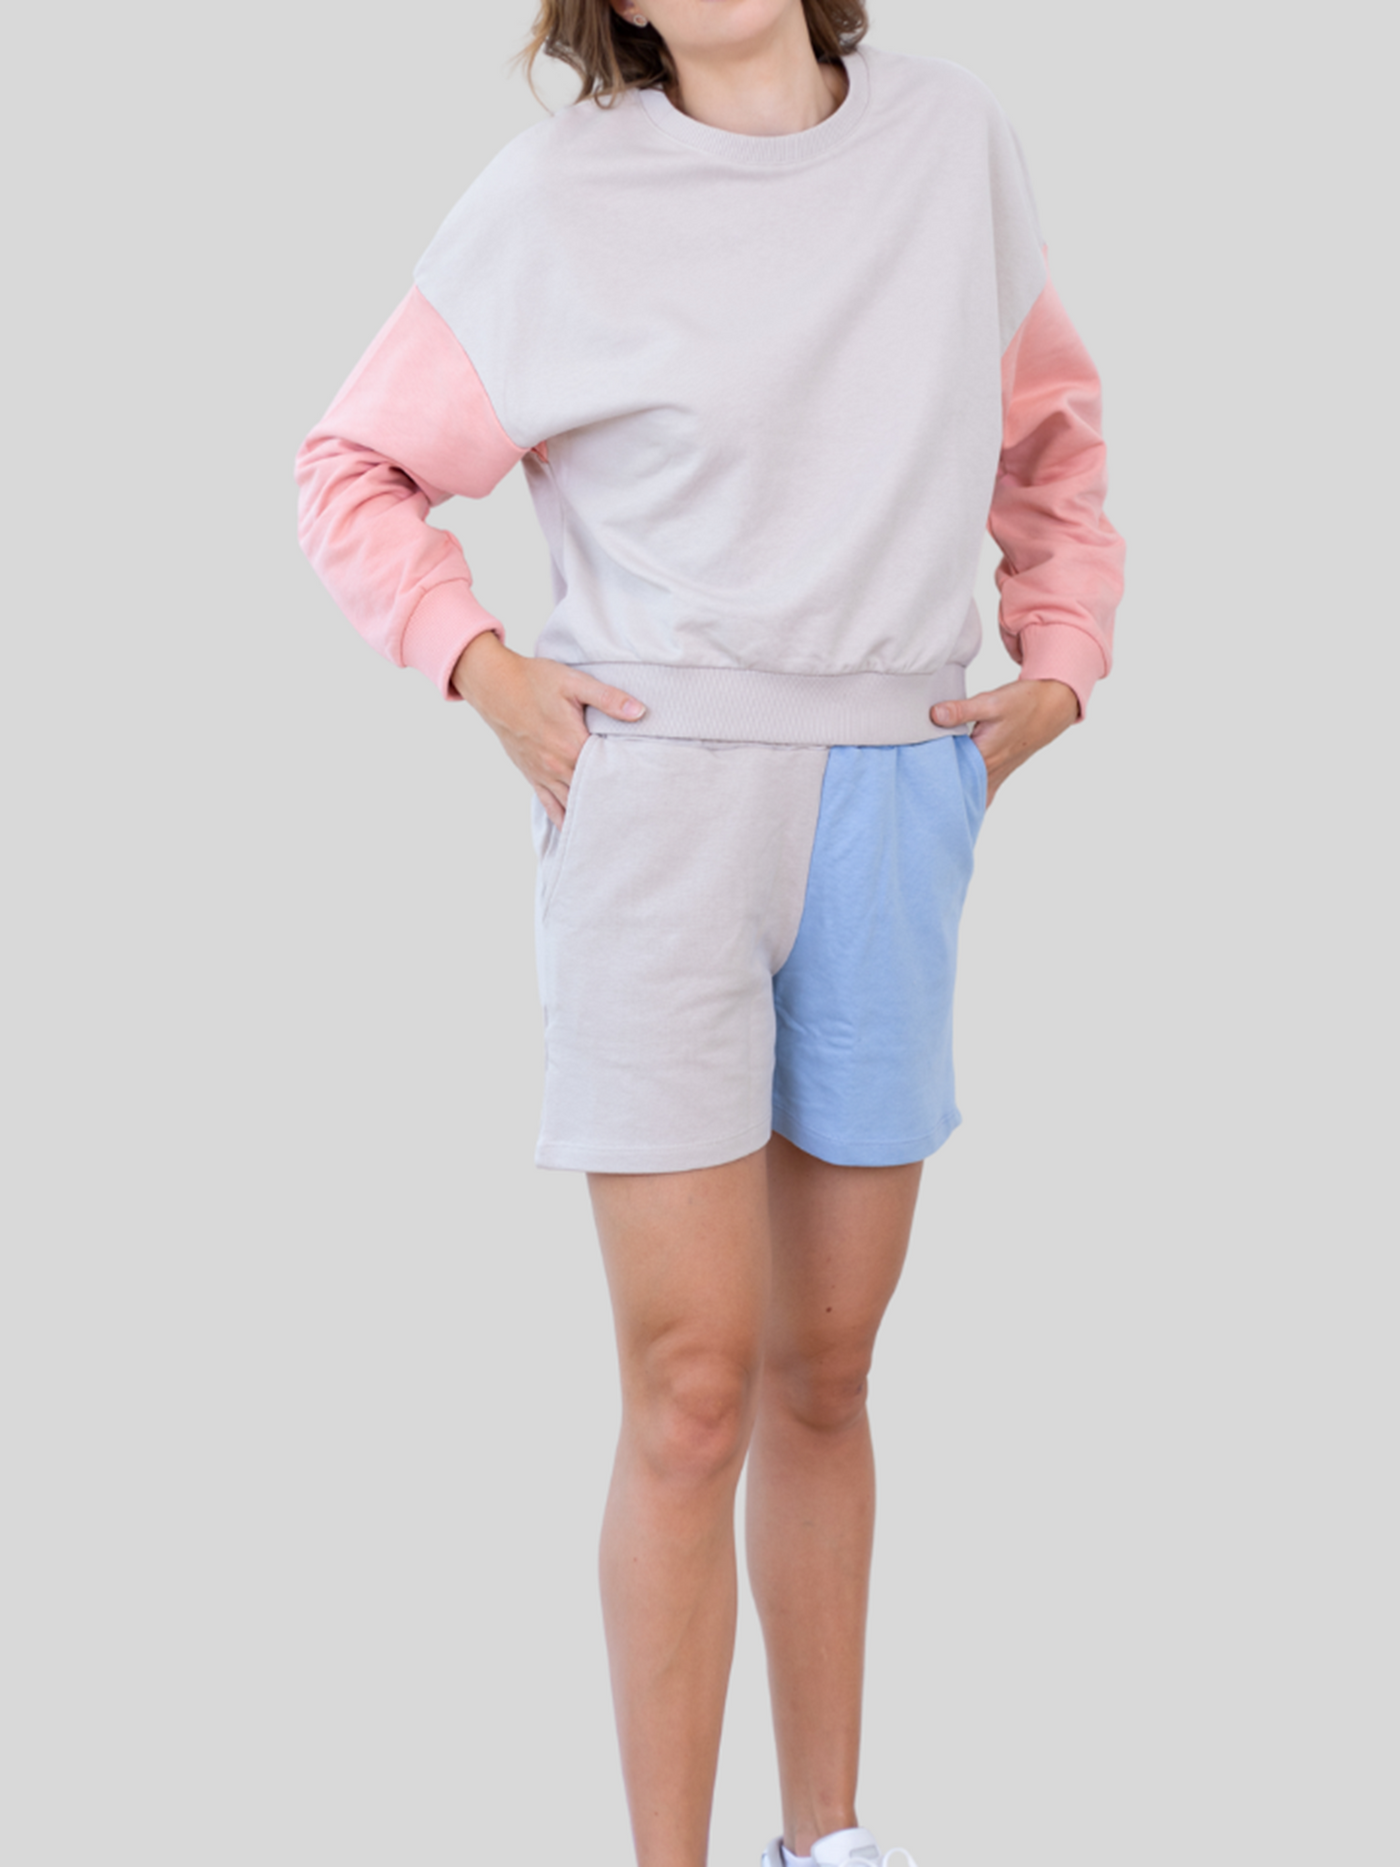 Mera Color Blocks Shorts - Sand/Blå - Jacqueline de Yong - Sand/Beige